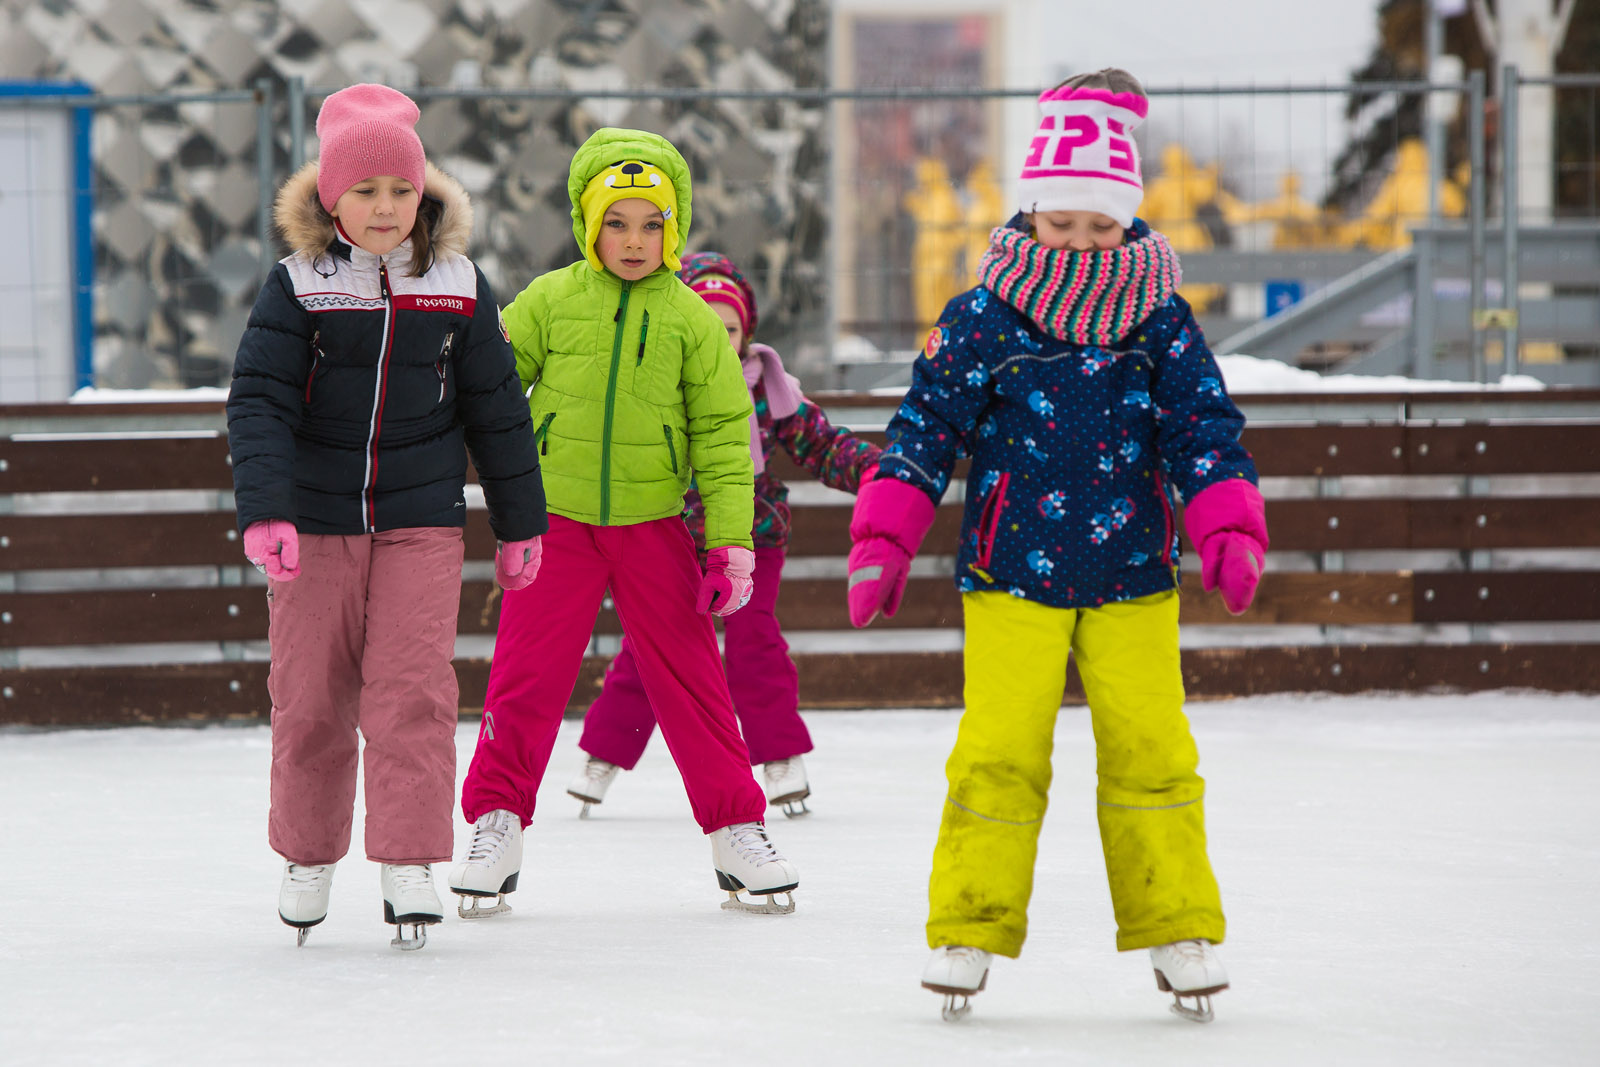 На катке было 15 детей. Дети катаются на коньках. Детки катаются на коньках. Дети катиаю ся на коньках. Кататься на коньках зимой.